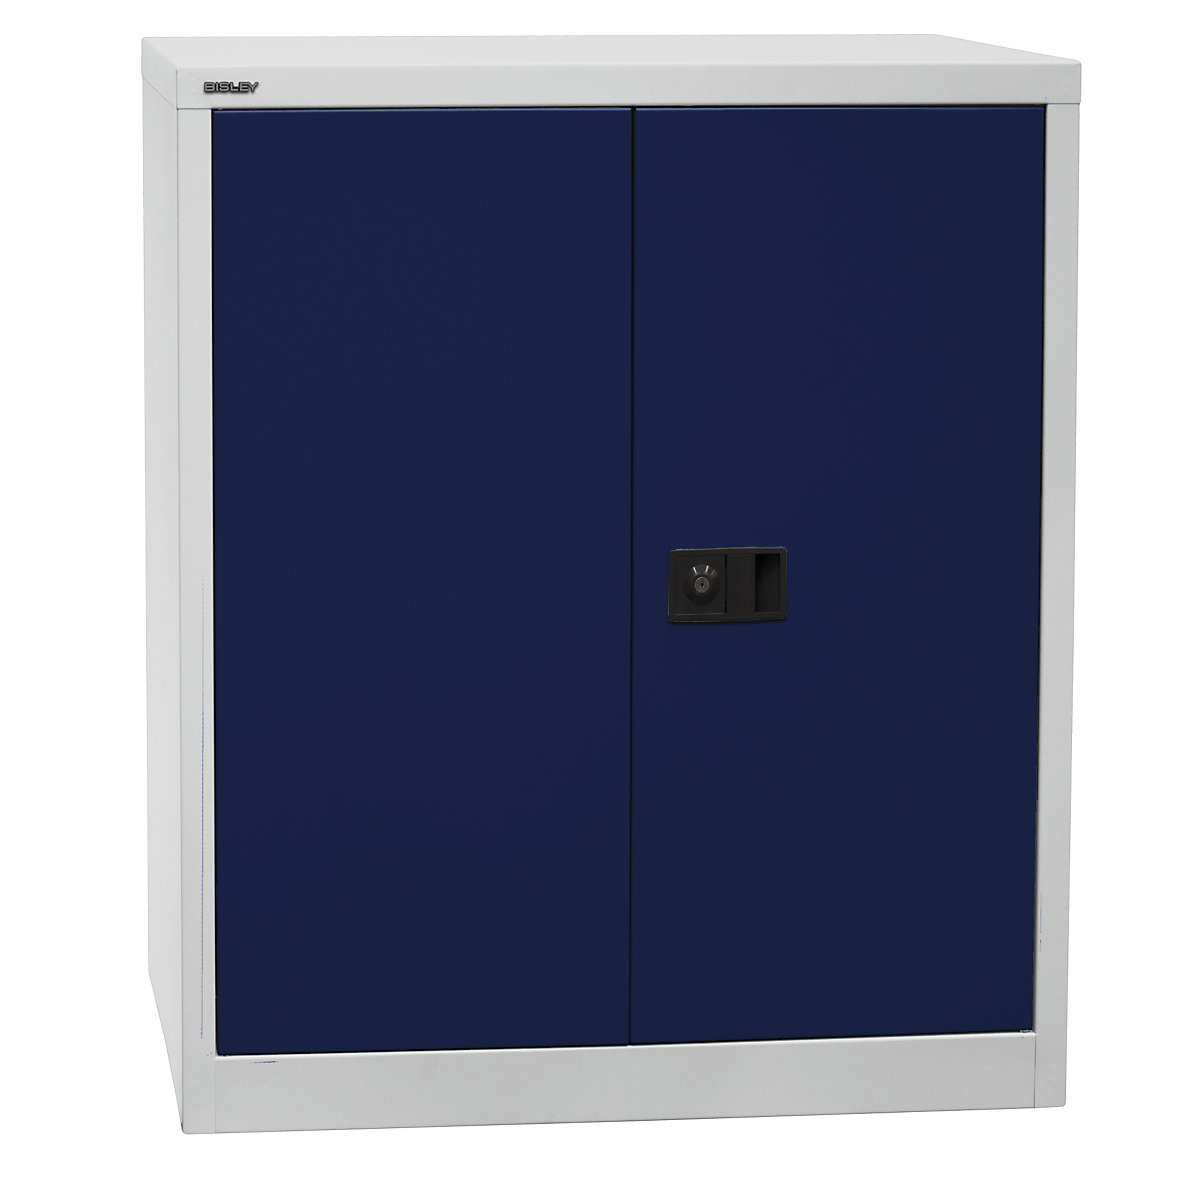 UNIVERSAL skriňa s krídlovými dverami – BISLEY, v x š x h 1000 x 914 x 400 mm, 1 pozinkovaná polica, 2 výšky zakladačov, svetlošedá / oxfordská modrá-5